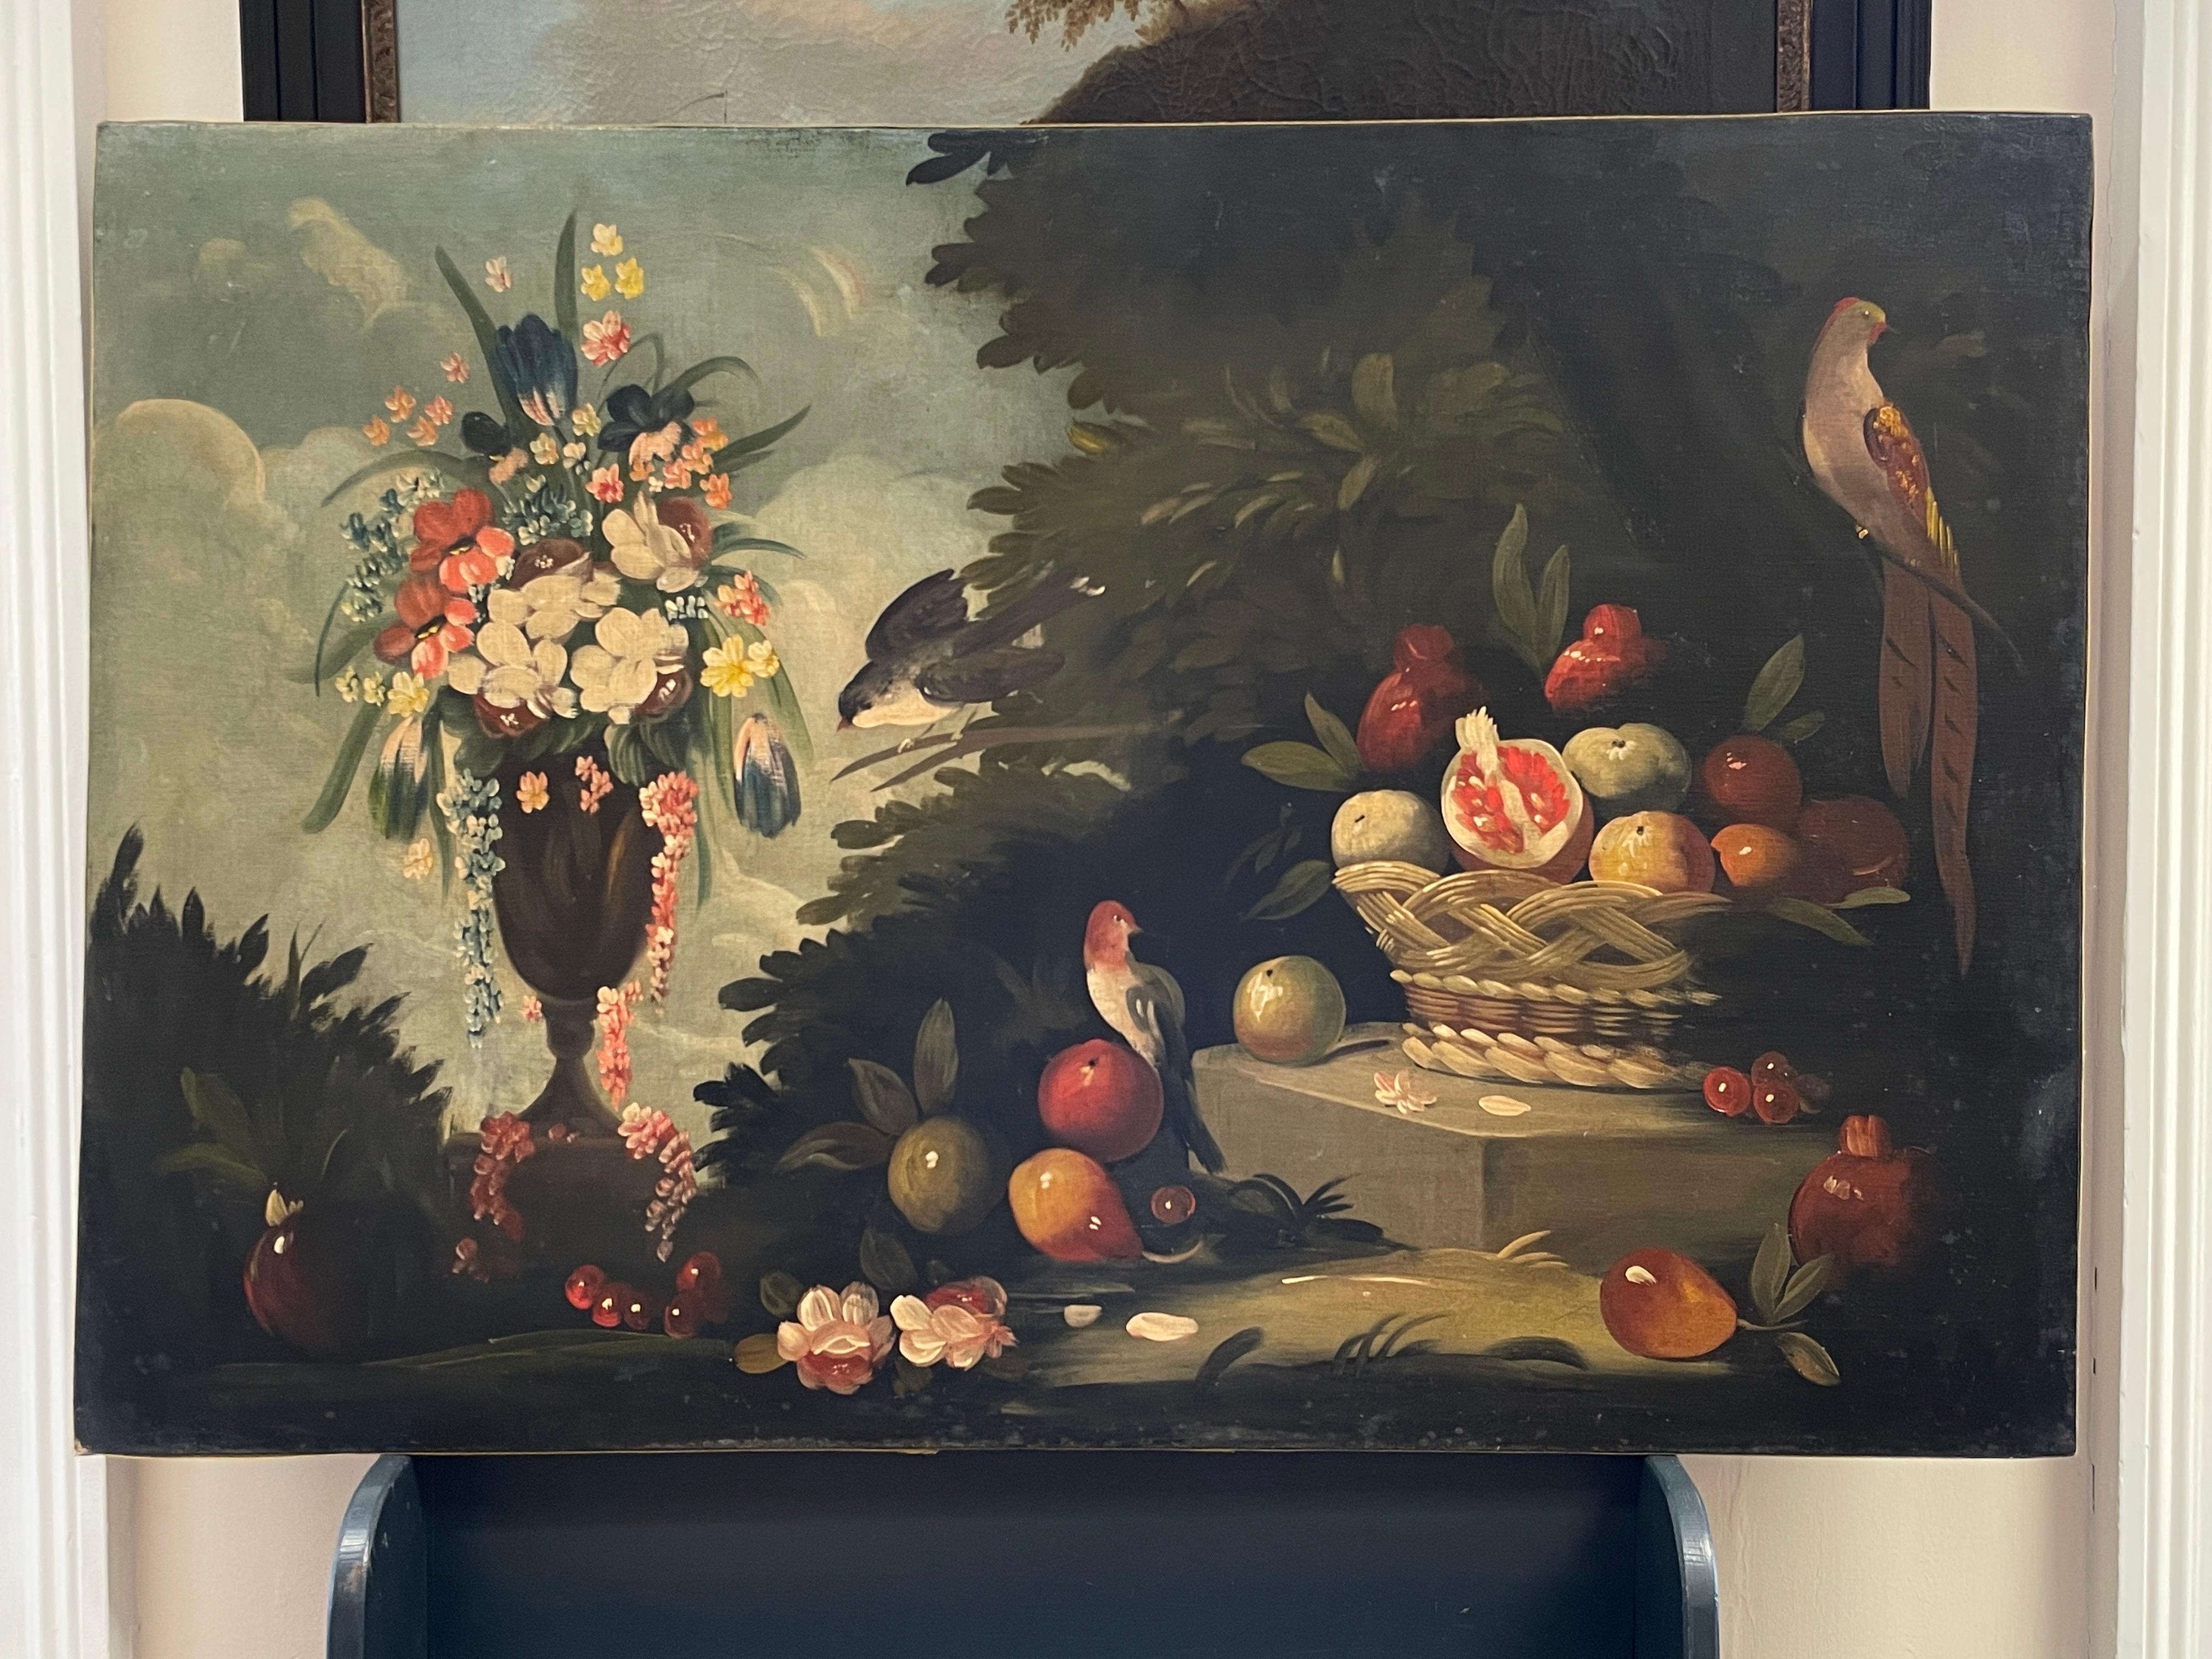 Großes italienisches klassisches Stillleben des 19. Jahrhunderts mit Ornamentvögeln, Obst und Blumen – Painting von Italian 19th C